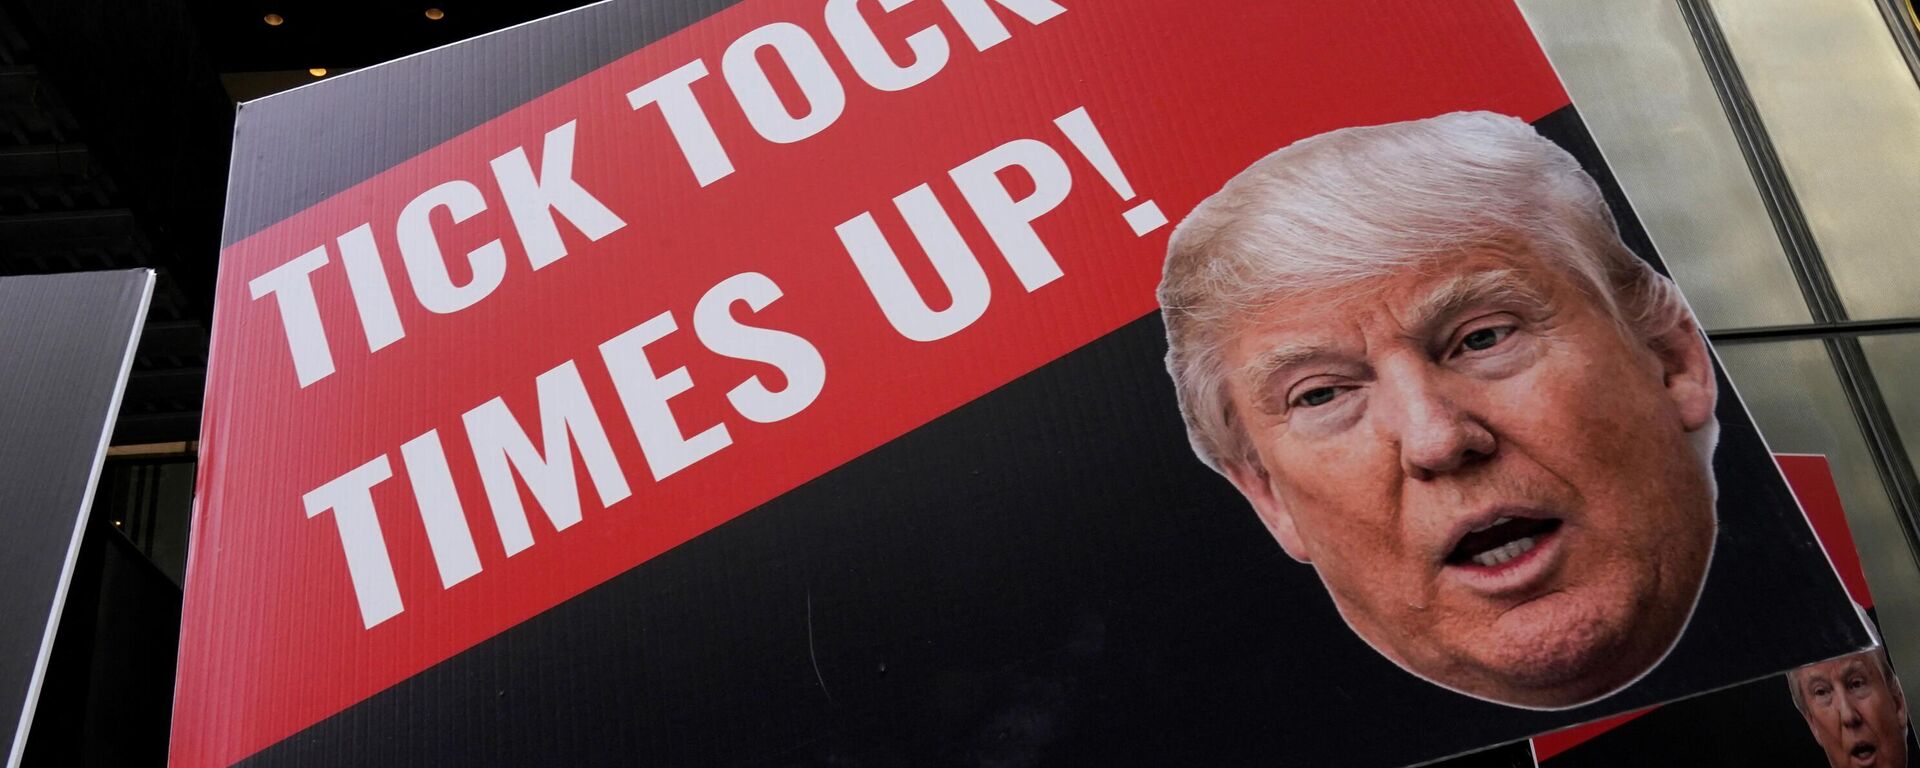 Donald Trump, ex-presidente dos EUA (2017-2021), é retratado em um cartaz contra ele junto da Trump Tower em Nova York, EUA, 31 de março de 2023 - Sputnik Brasil, 1920, 31.03.2023